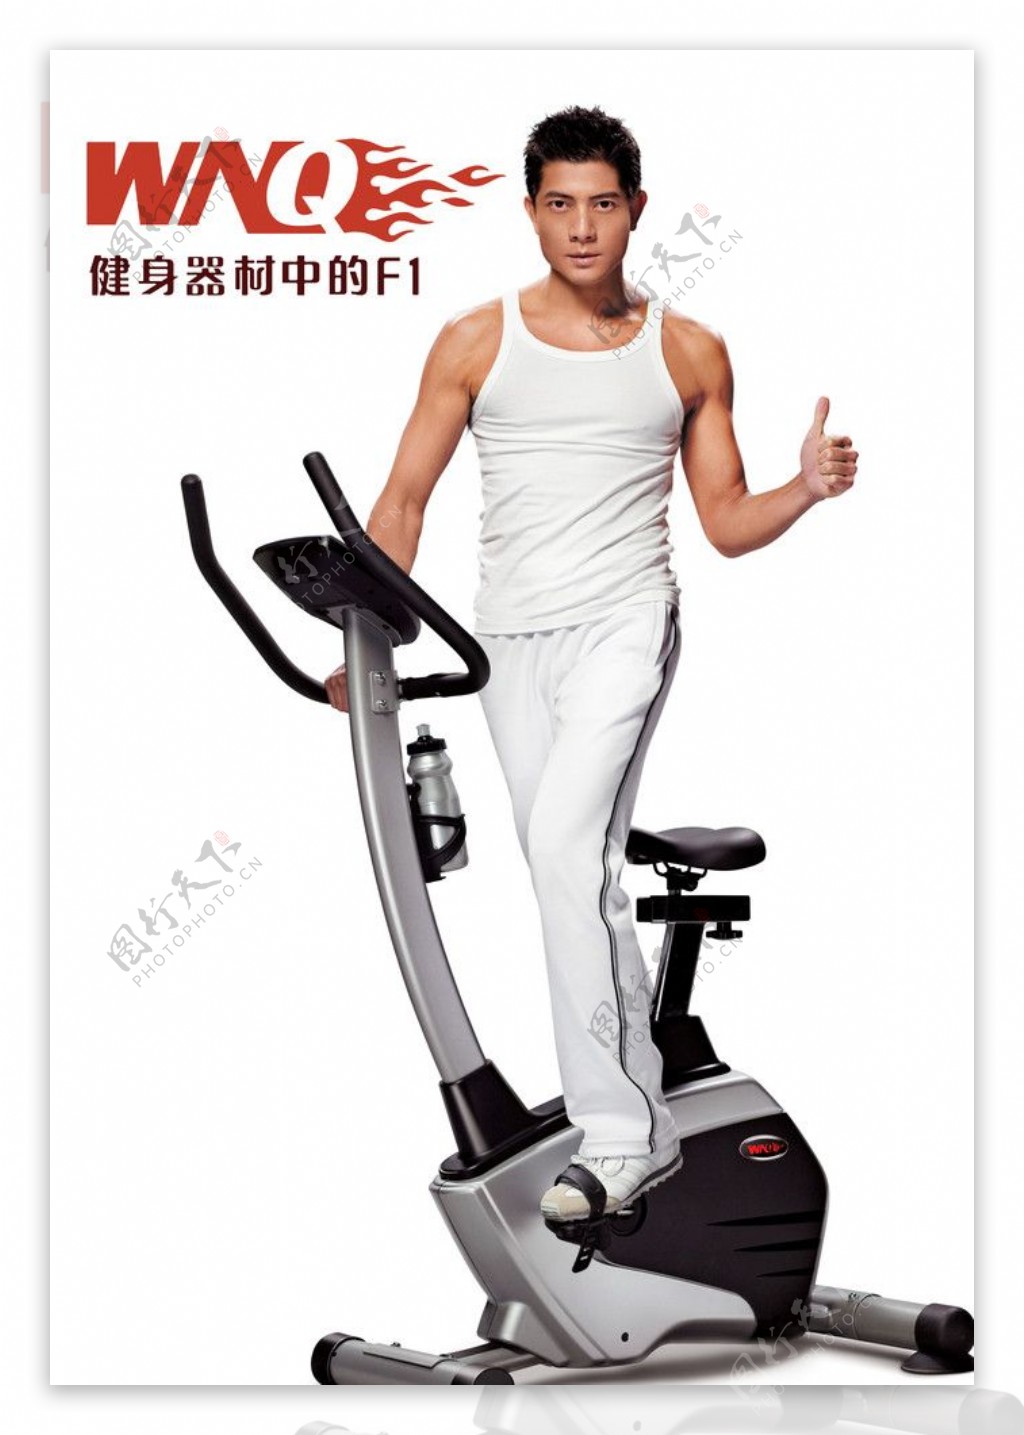 万年青健身器材标志代言人郭富城跑步机光广告设计模板国内广告设计源文件库72PSD图片